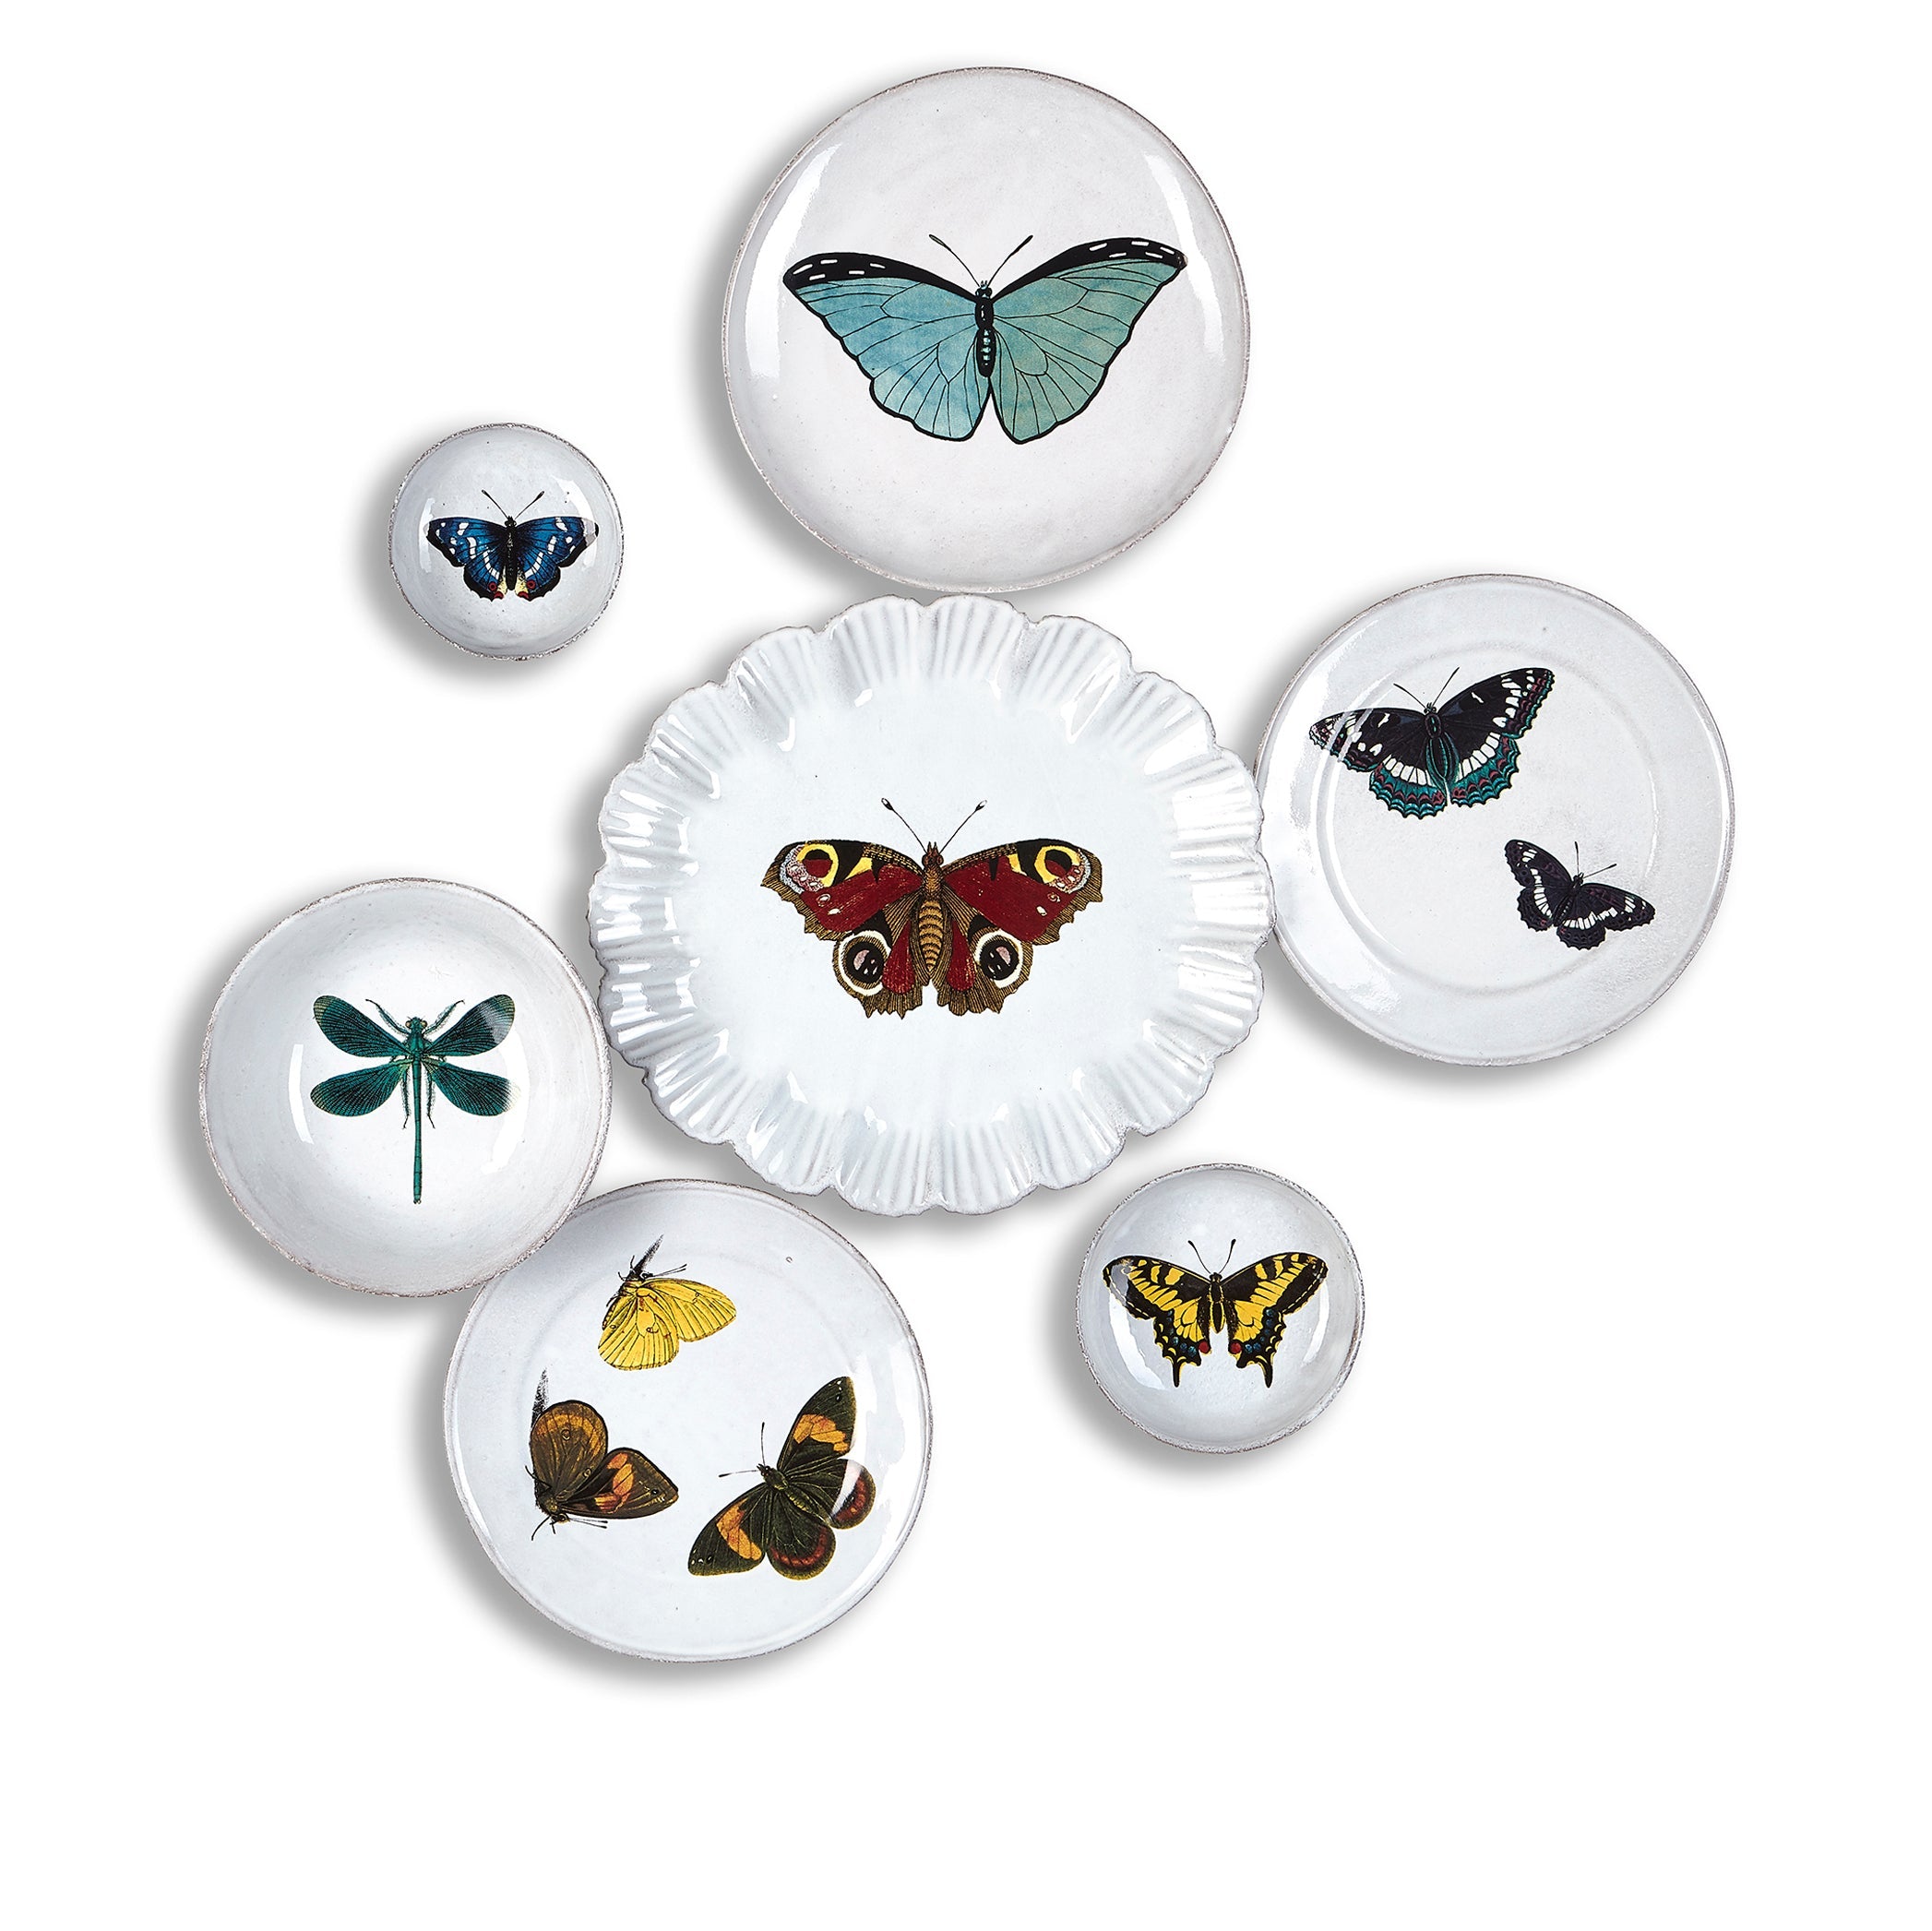 Three Butterflies Plate by Astier de Villatte, 19cm